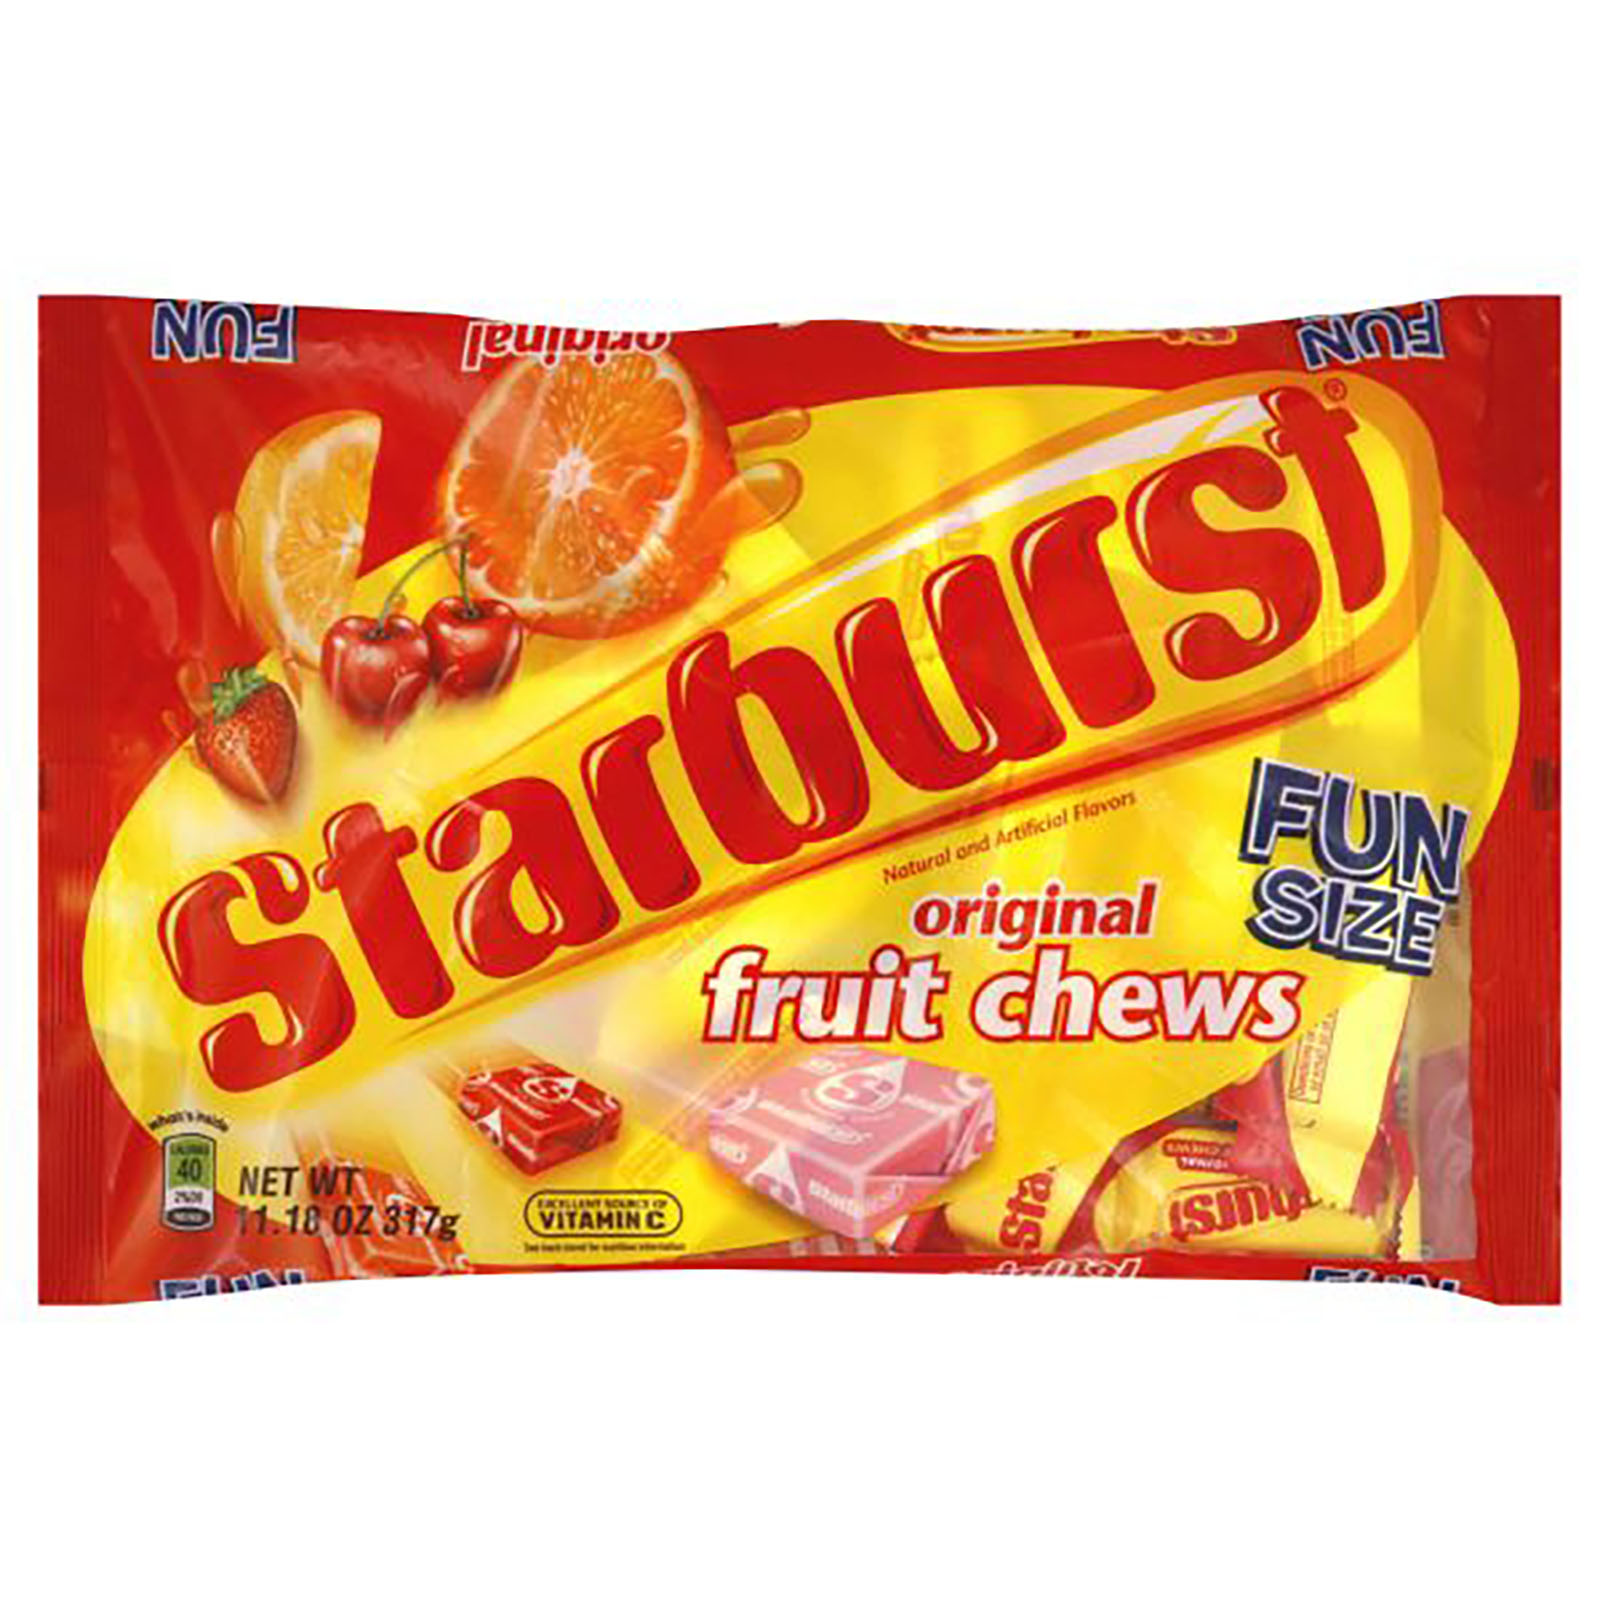 Mars Starburst original Fun Size Fruit Chews Bag, 11.18 Oz.